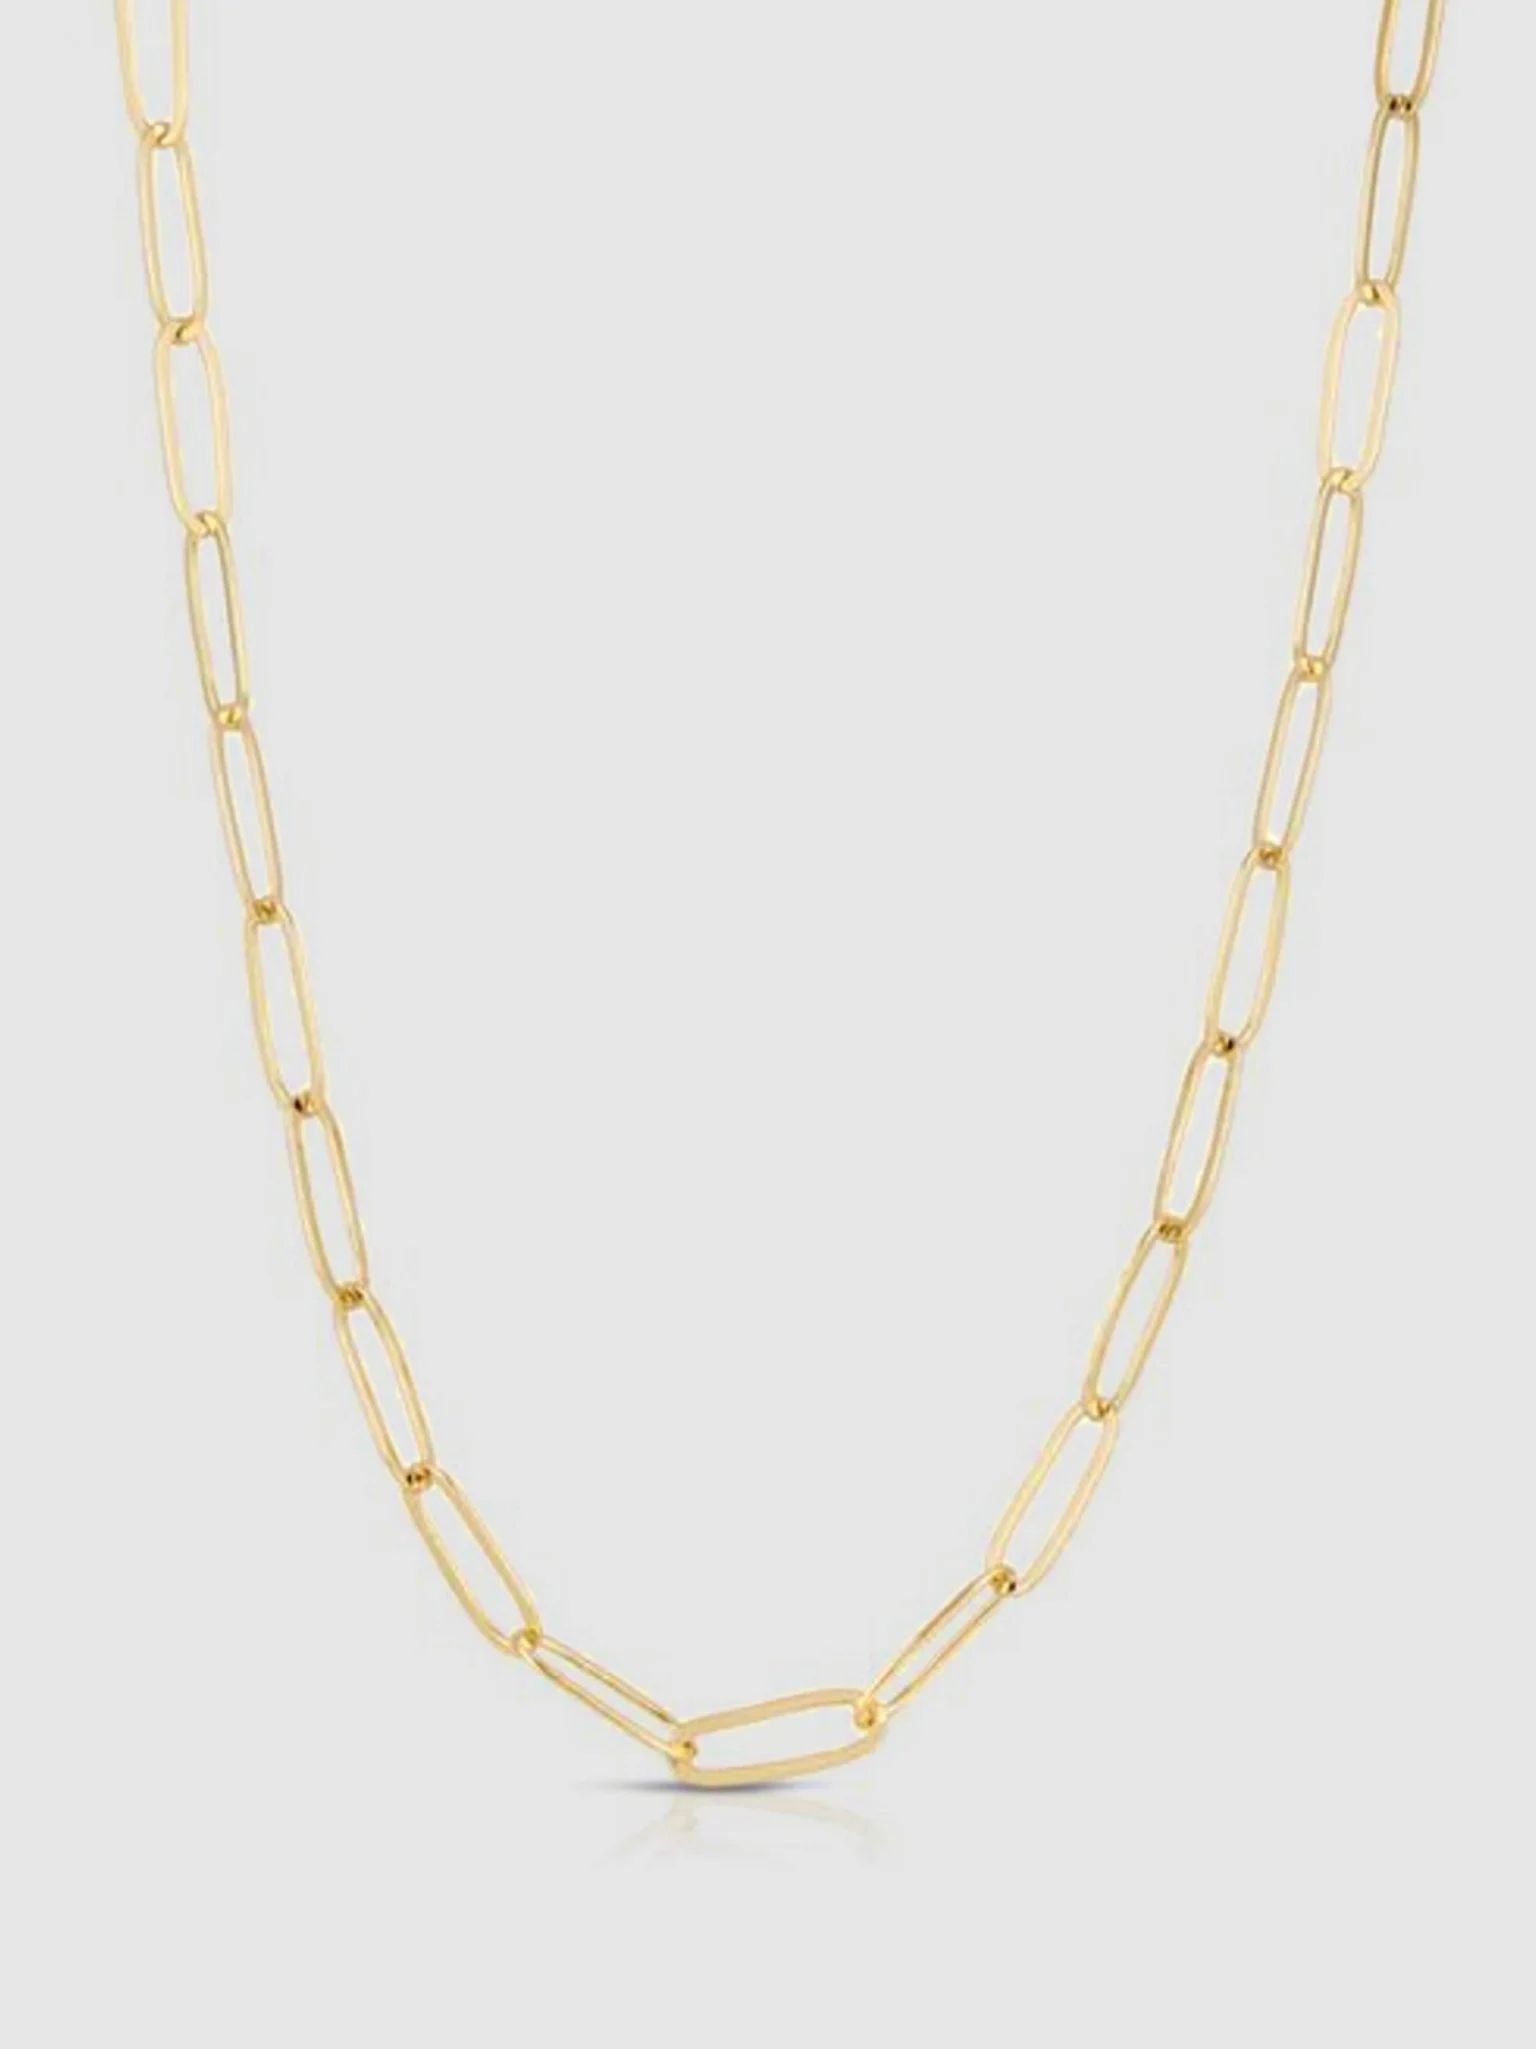 Monaco Necklace - Large | Verishop